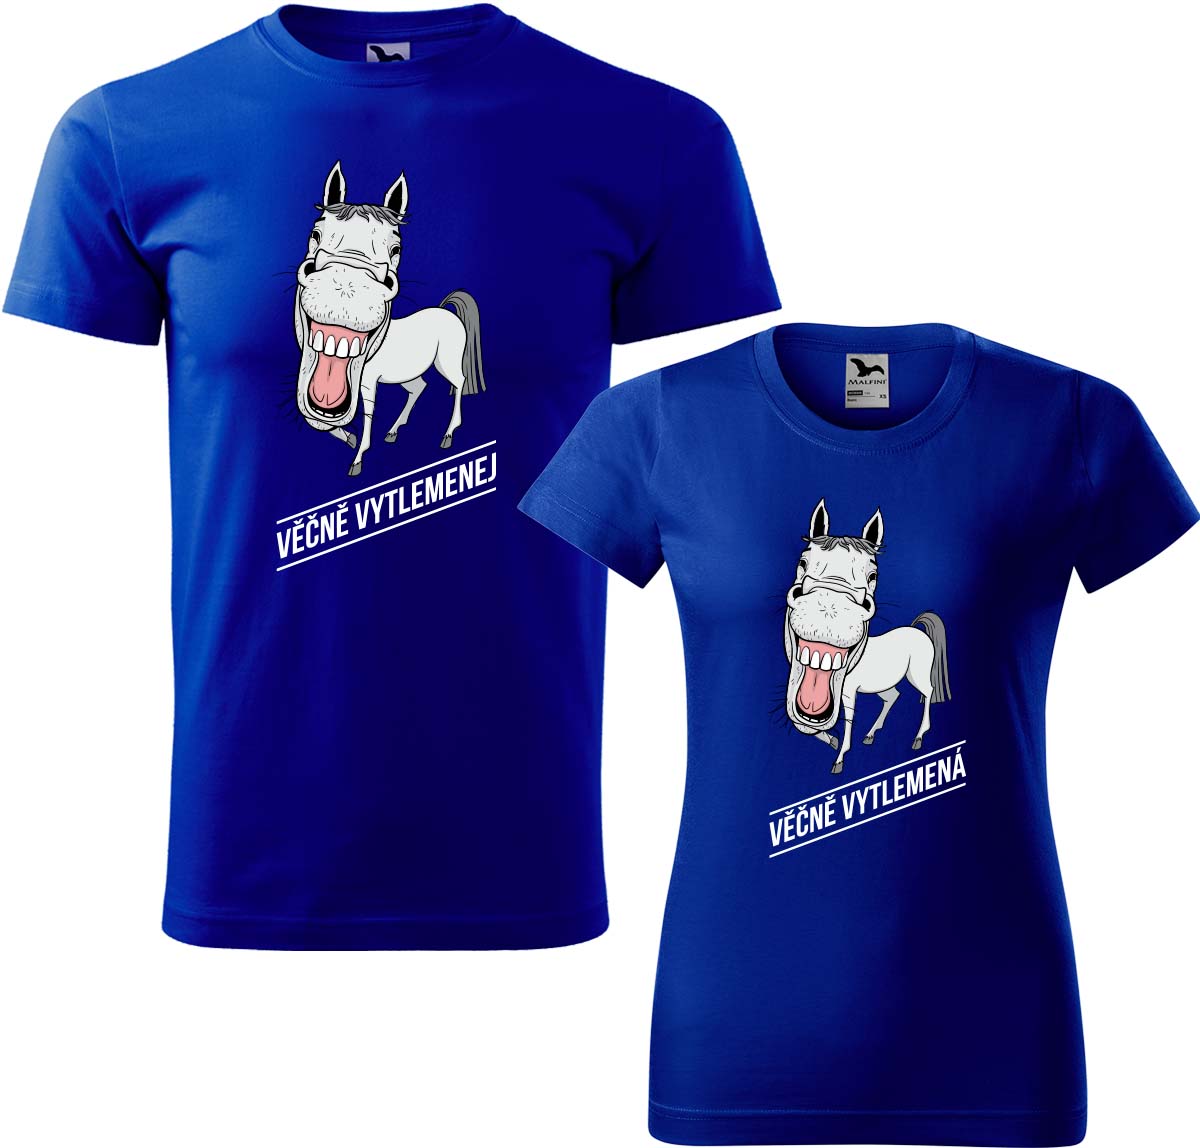 Trička pro páry - Věčně vytlemenej a věčně vytlemená Barva: Královská modrá (05), Velikost dámské tričko: XL, Velikost pánské tričko: XL